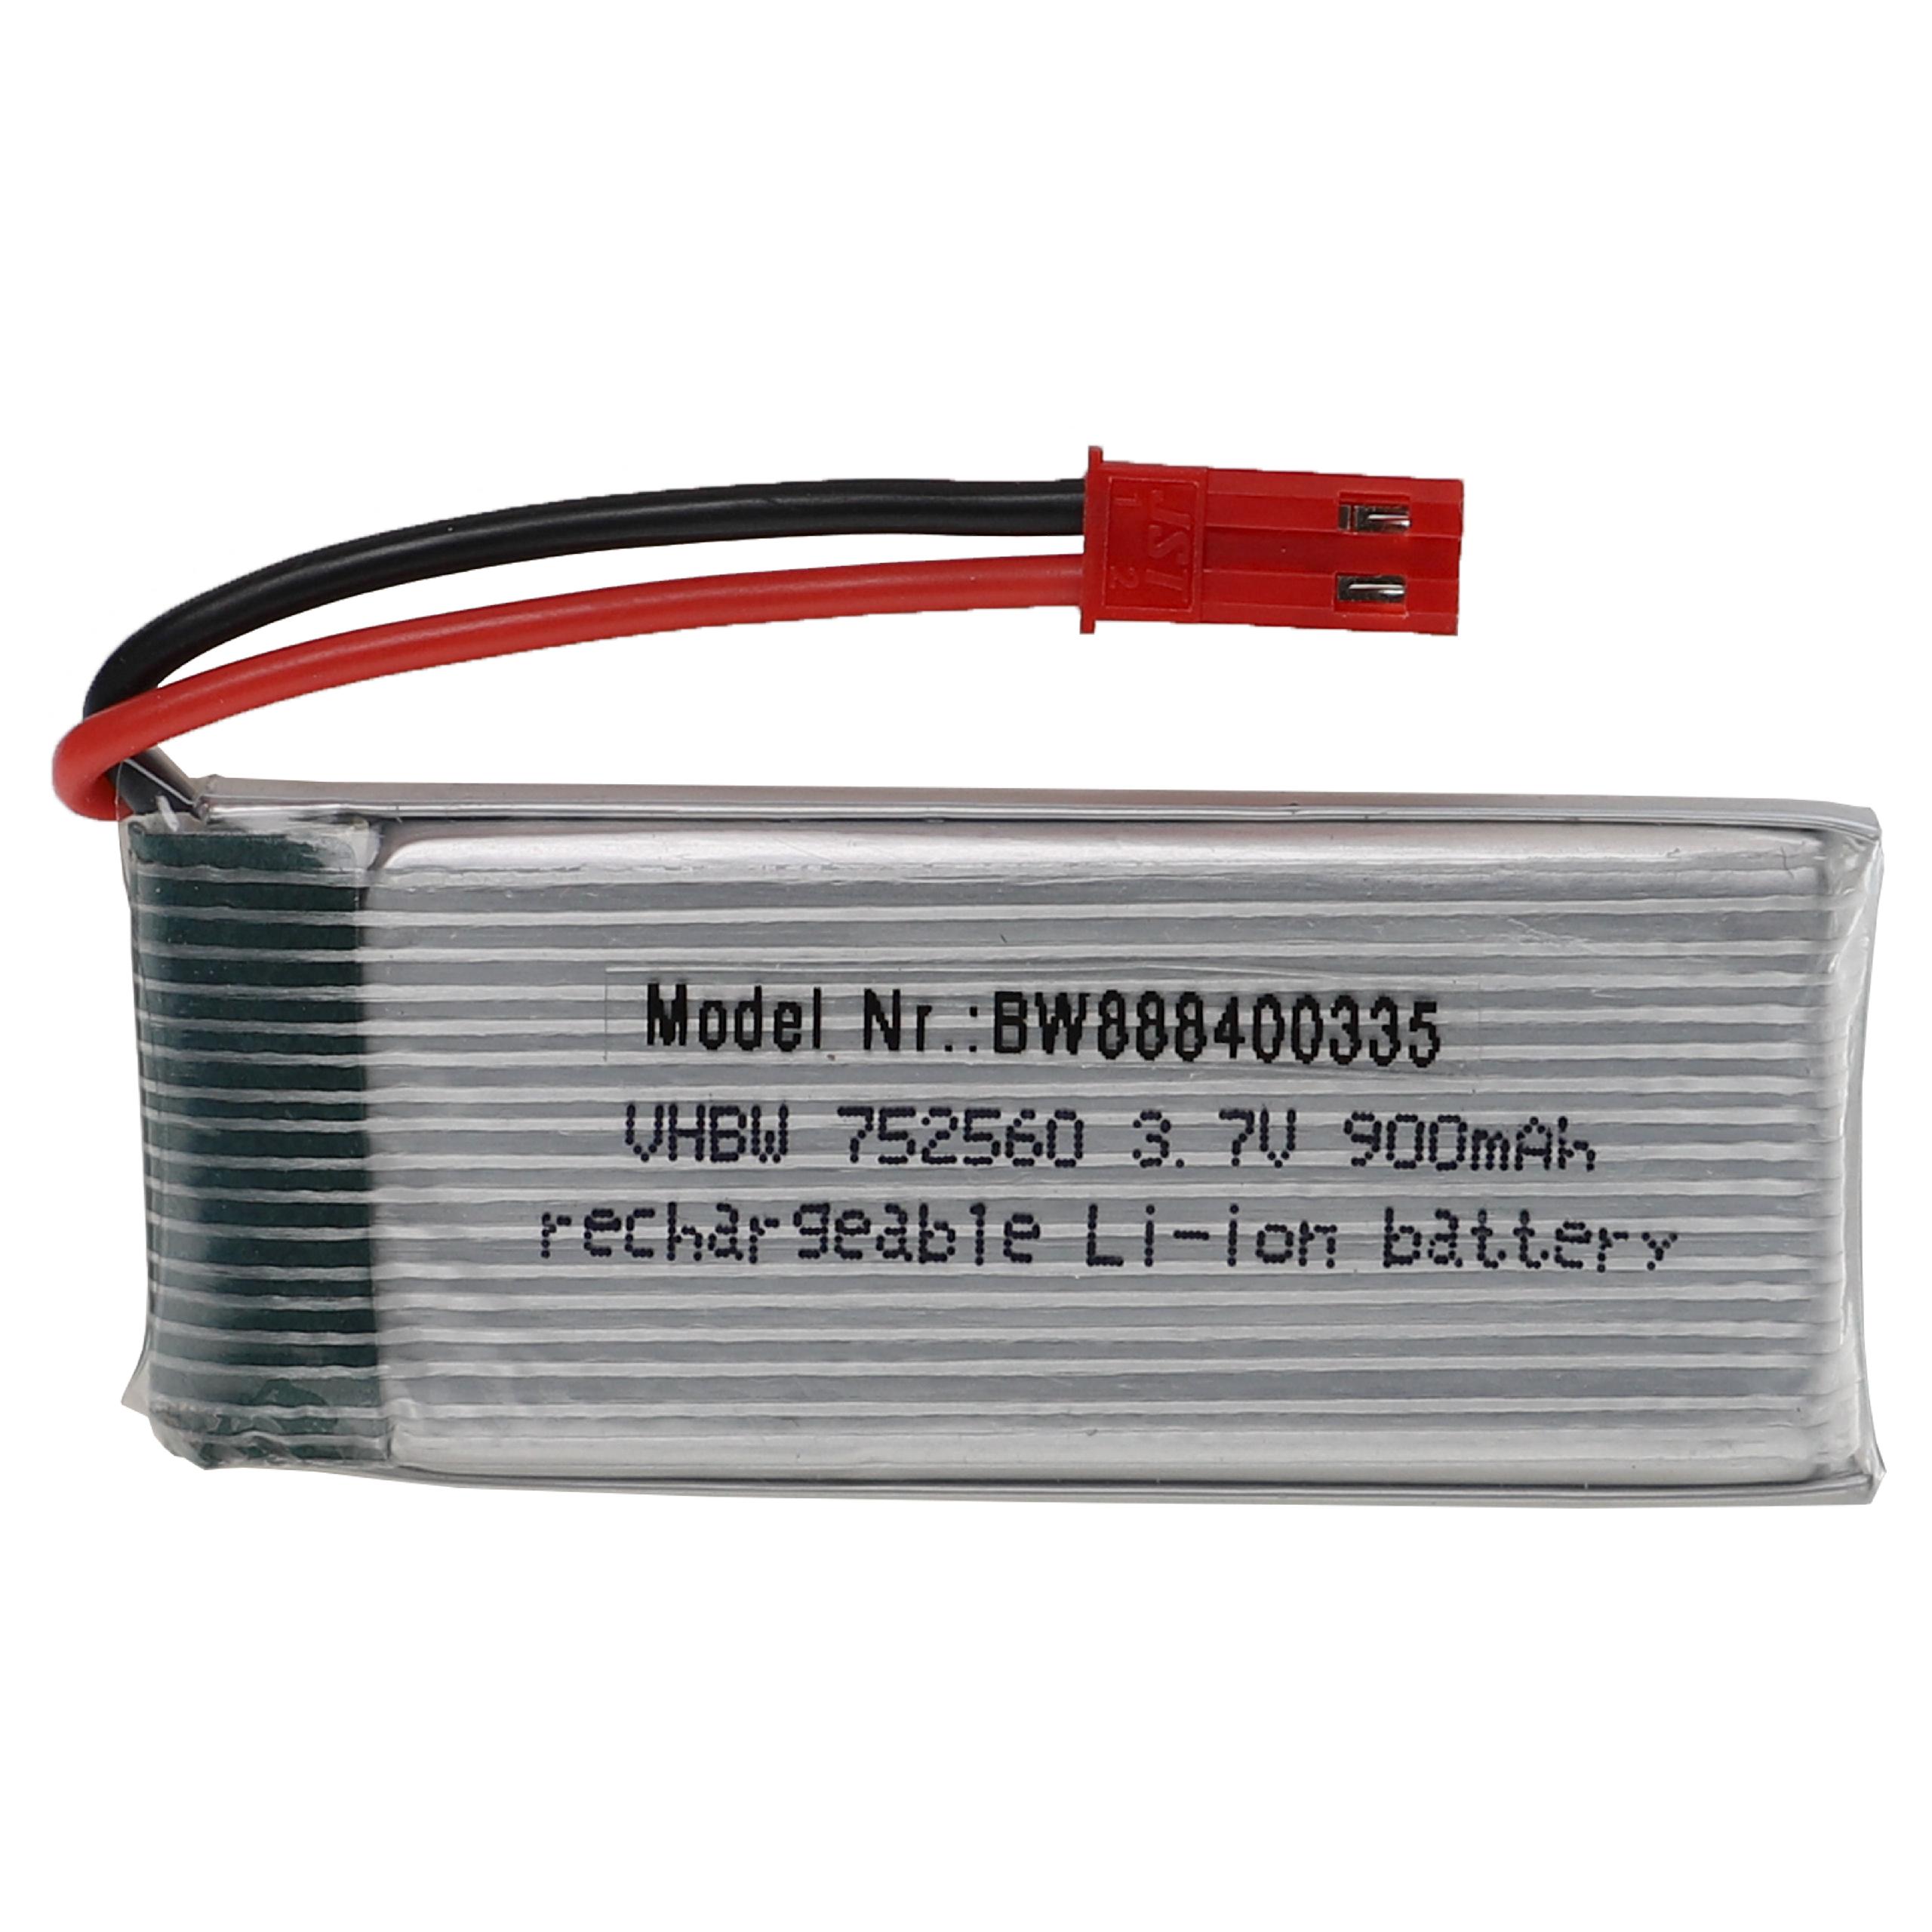 Batterie pour modèle radio-télécommandé - 900mAh 3,7V Li-polymère, BEC